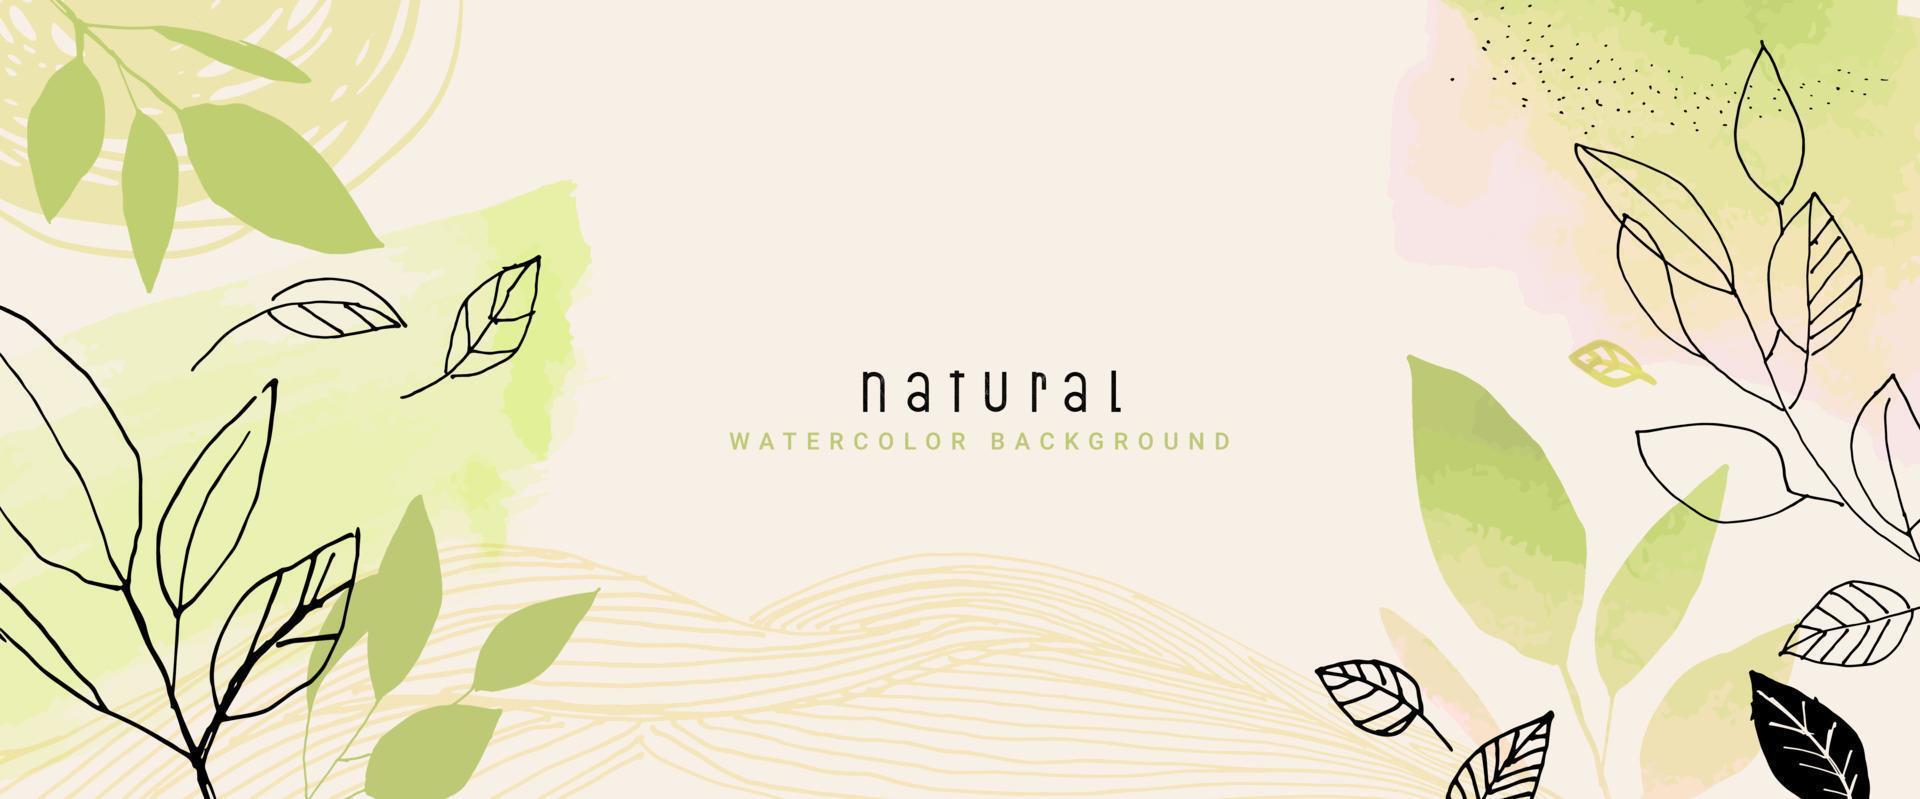 fondo de vector de acuarela natural para diseño gráfico y web, presentación de negocios, marketing. ilustración dibujada a mano para productos naturales y orgánicos, belleza y moda, cosmética y bienestar.